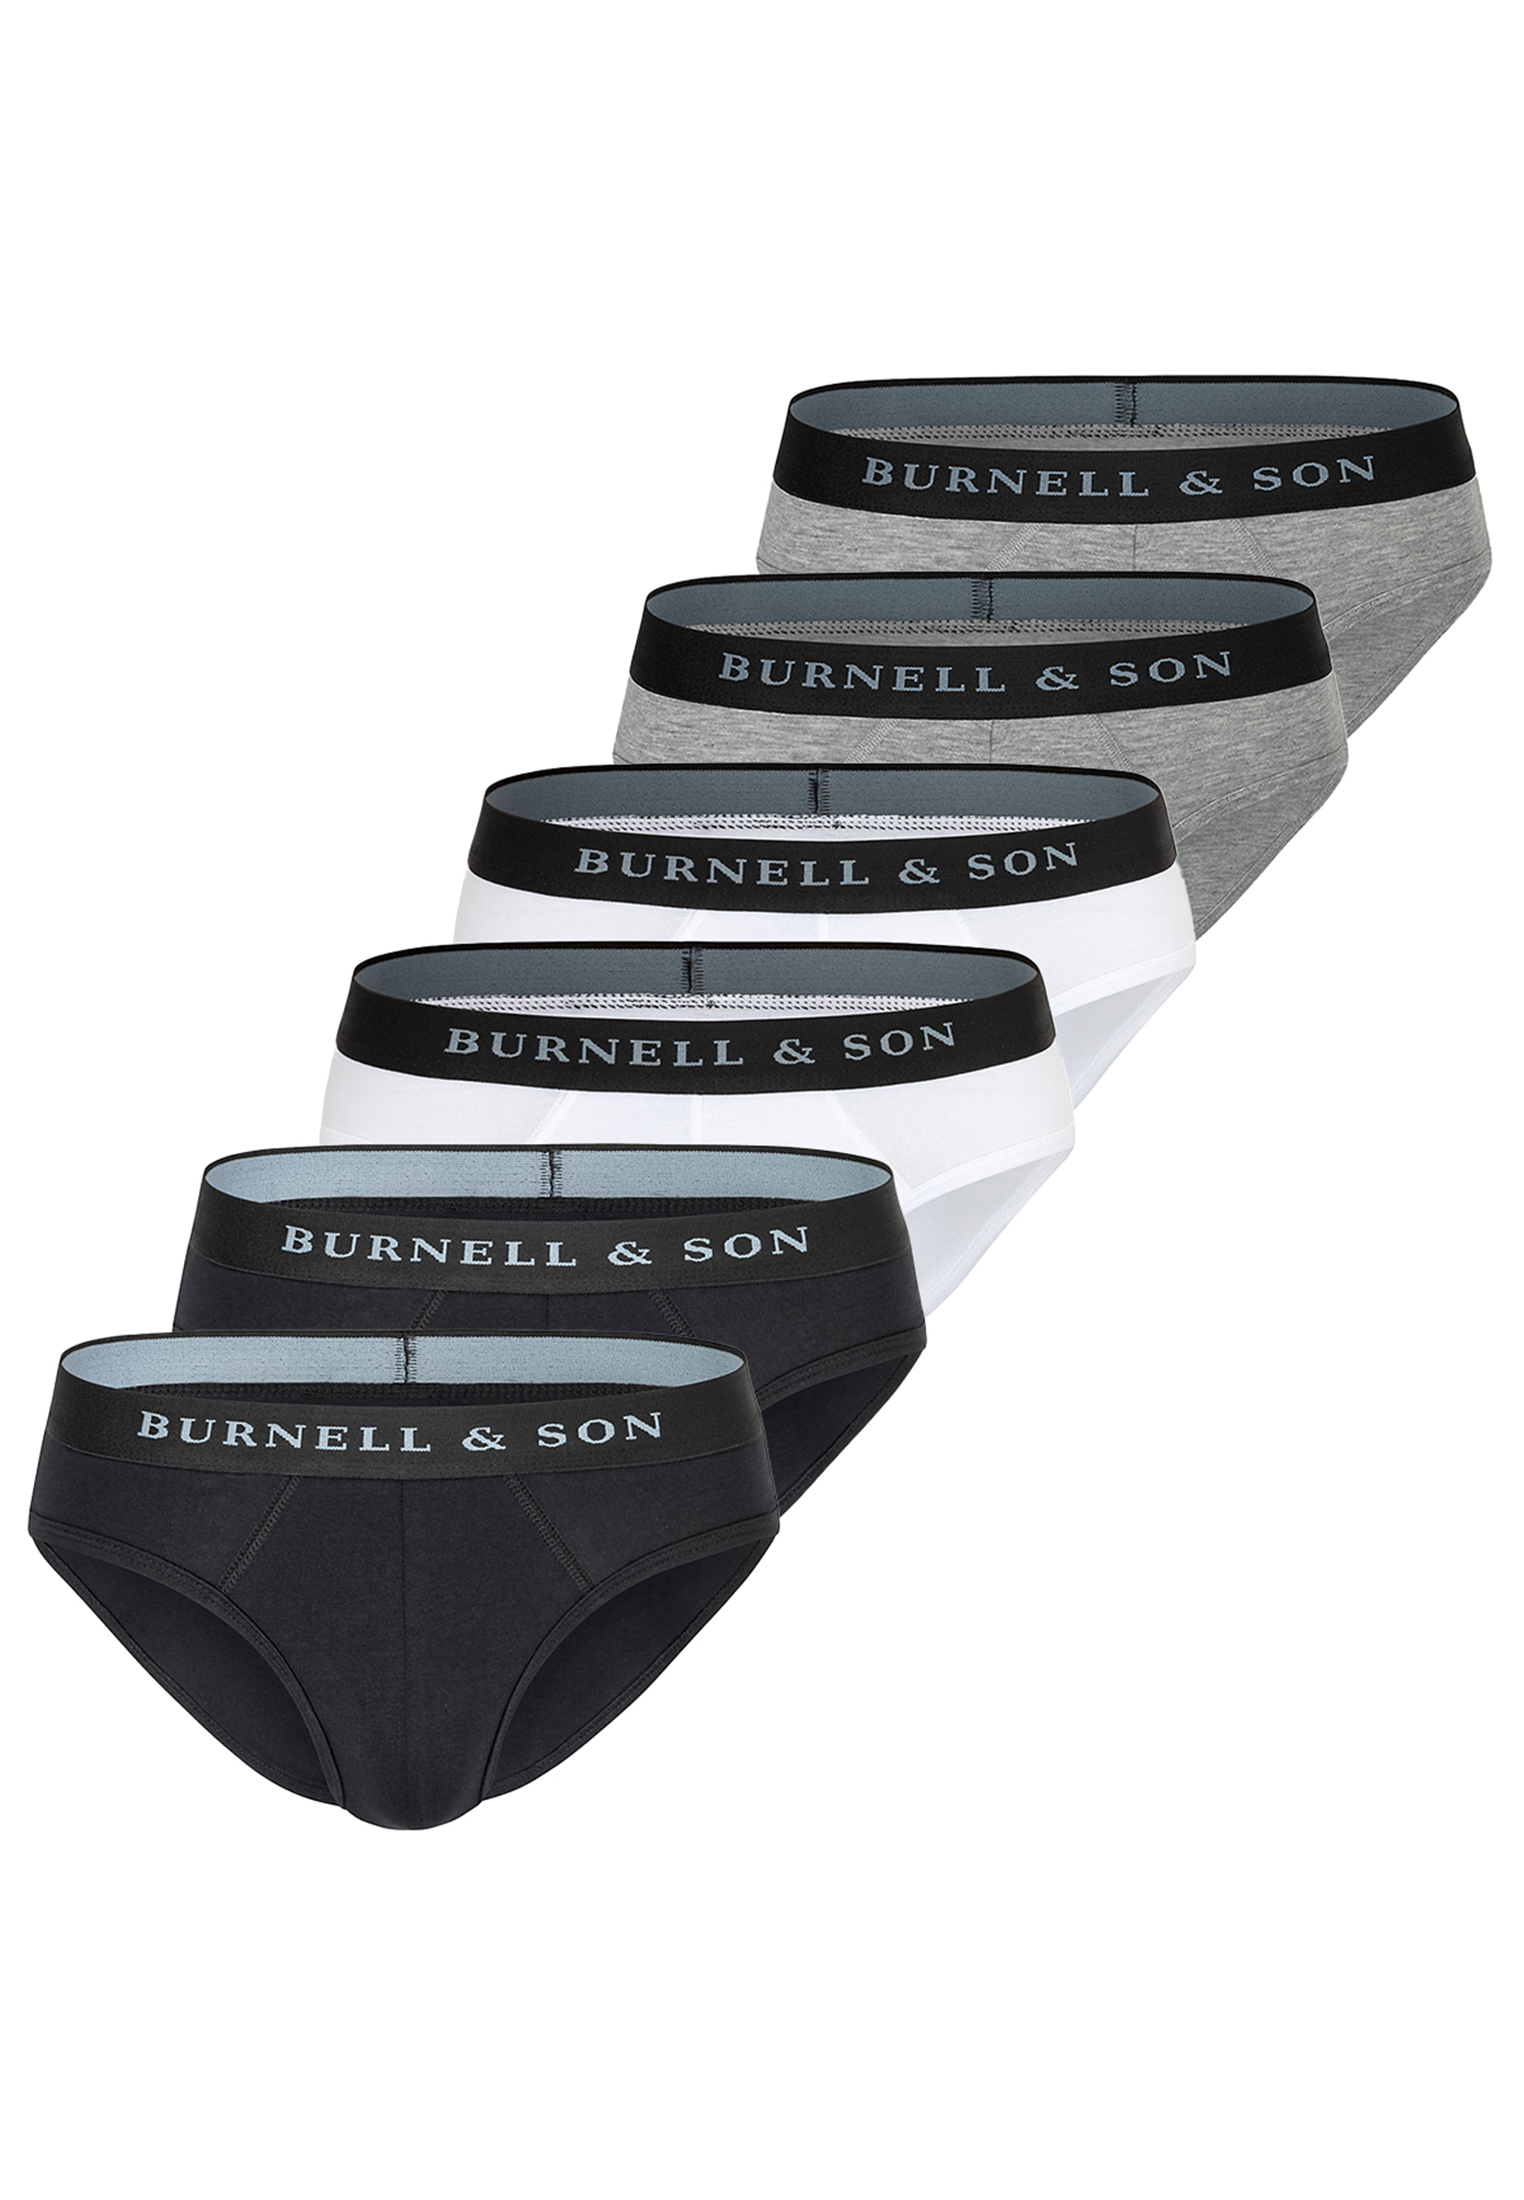 футболка базовая 3 pack basic burnell Трусы Burnell & Son/Unterhose Basic, цвет Mix